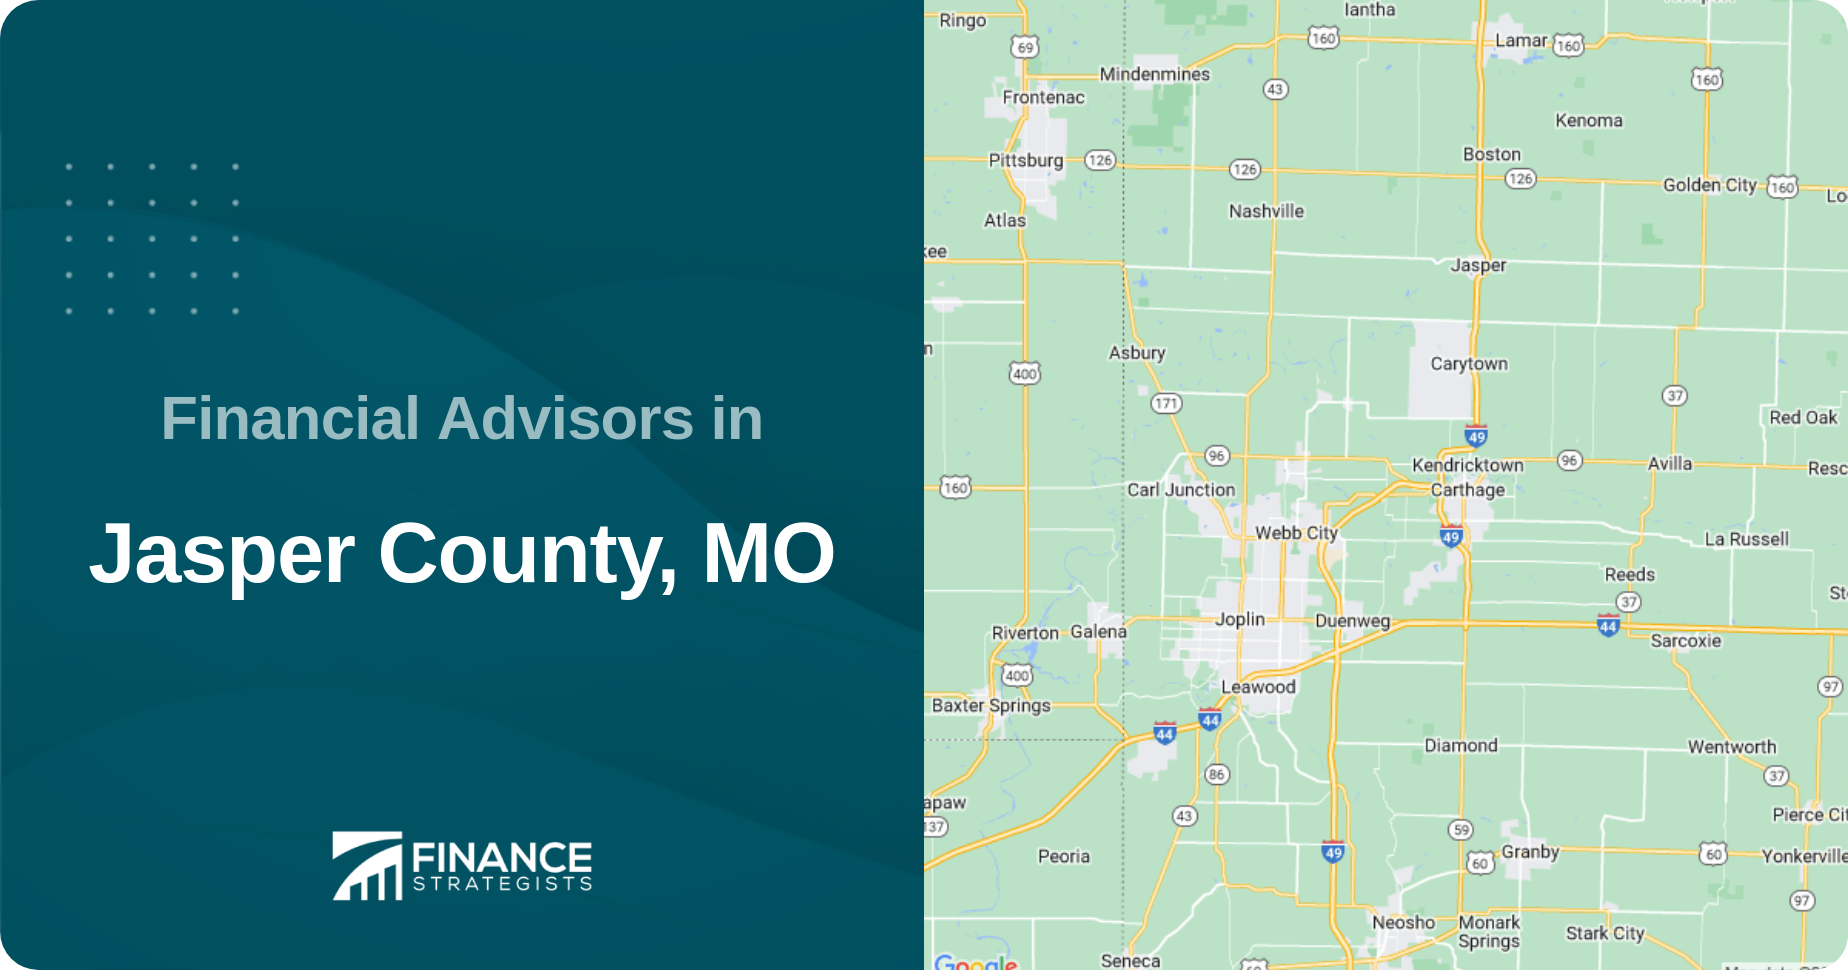 Financial Advisors in Jasper County, MO